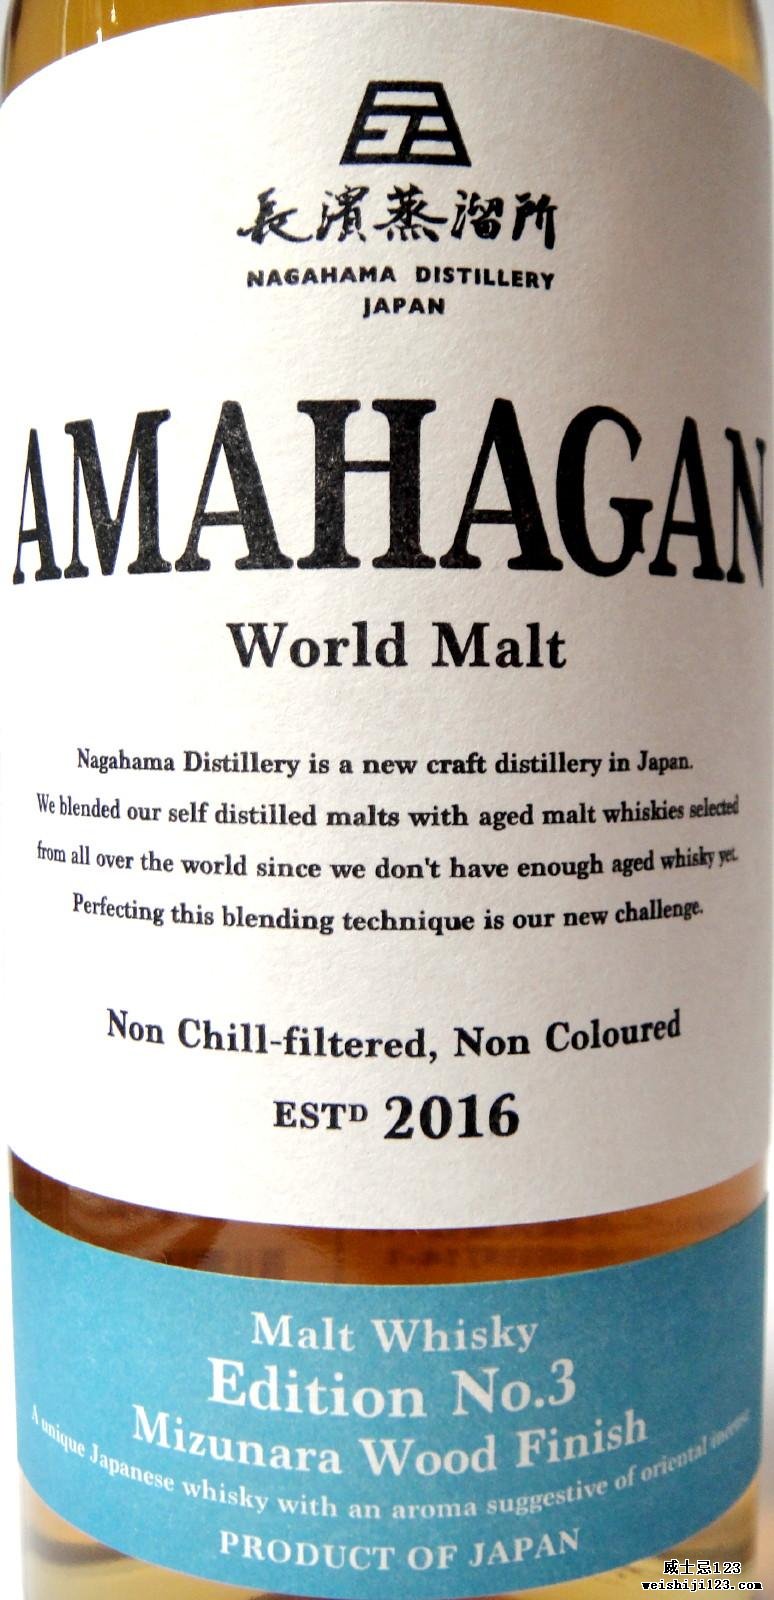 Amahagan World Malt